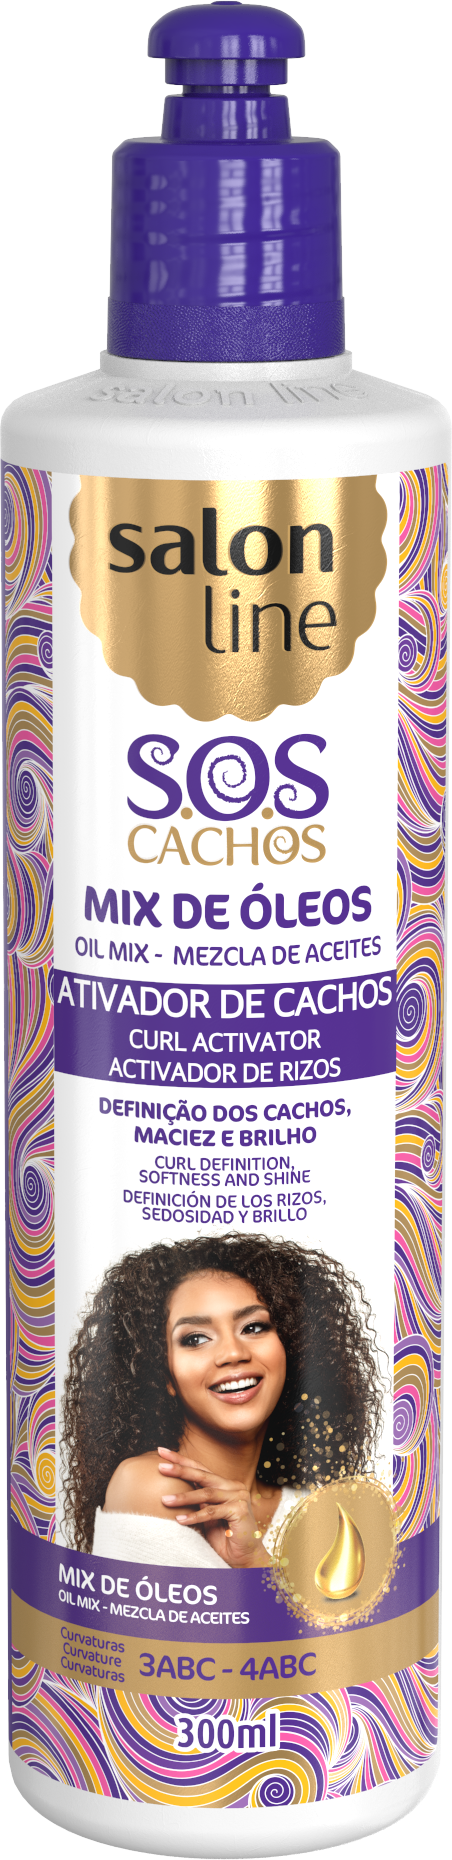 SOS CACHOS ACTIVADOR DE CAHOS MIX DE OLEOS 300ML SALON LINE